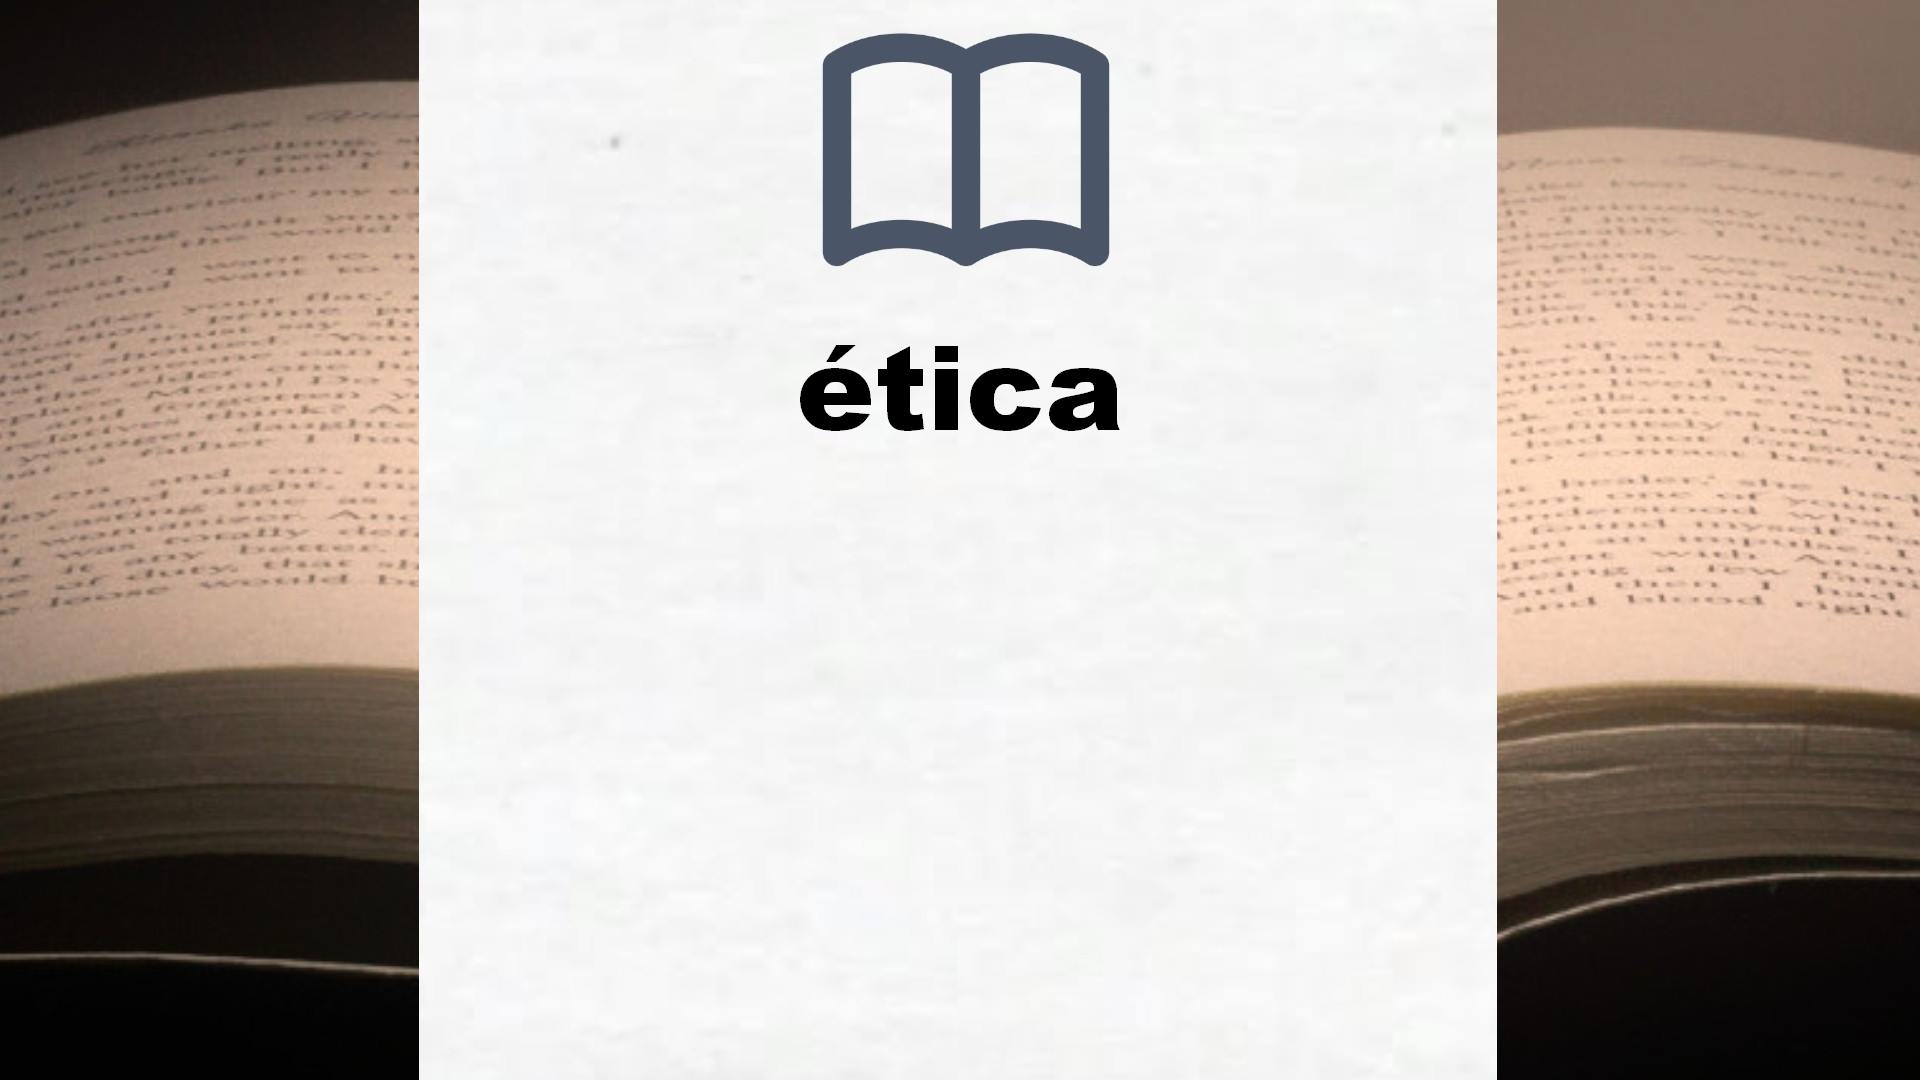 Libros sobre ética